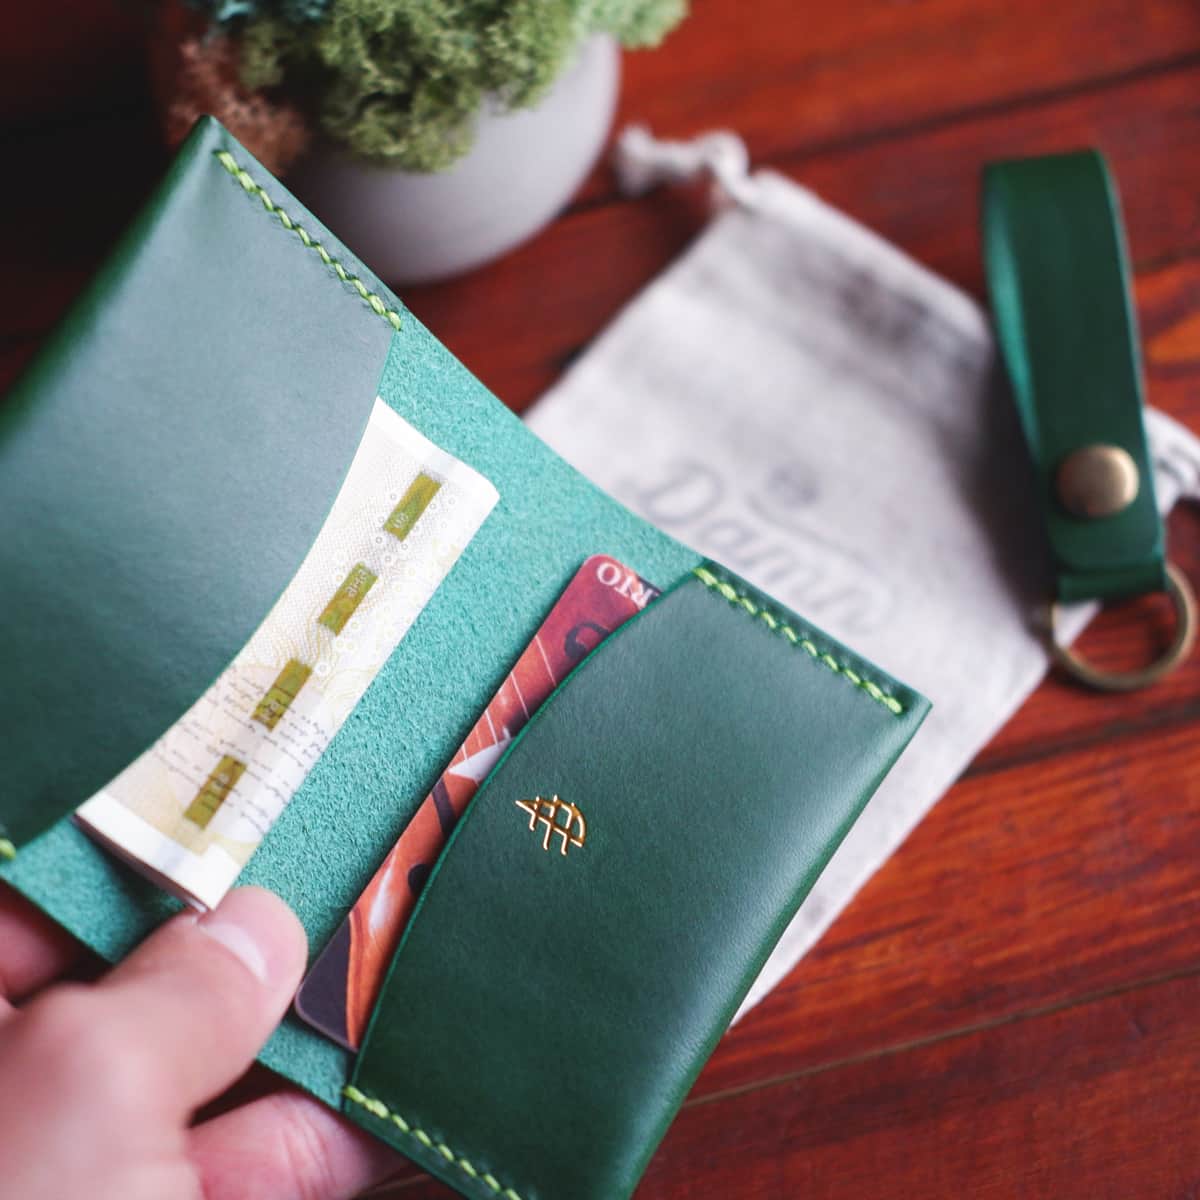 Grain Wallet in Shell Cordovan - Minimalist Luxury Leather Wallet